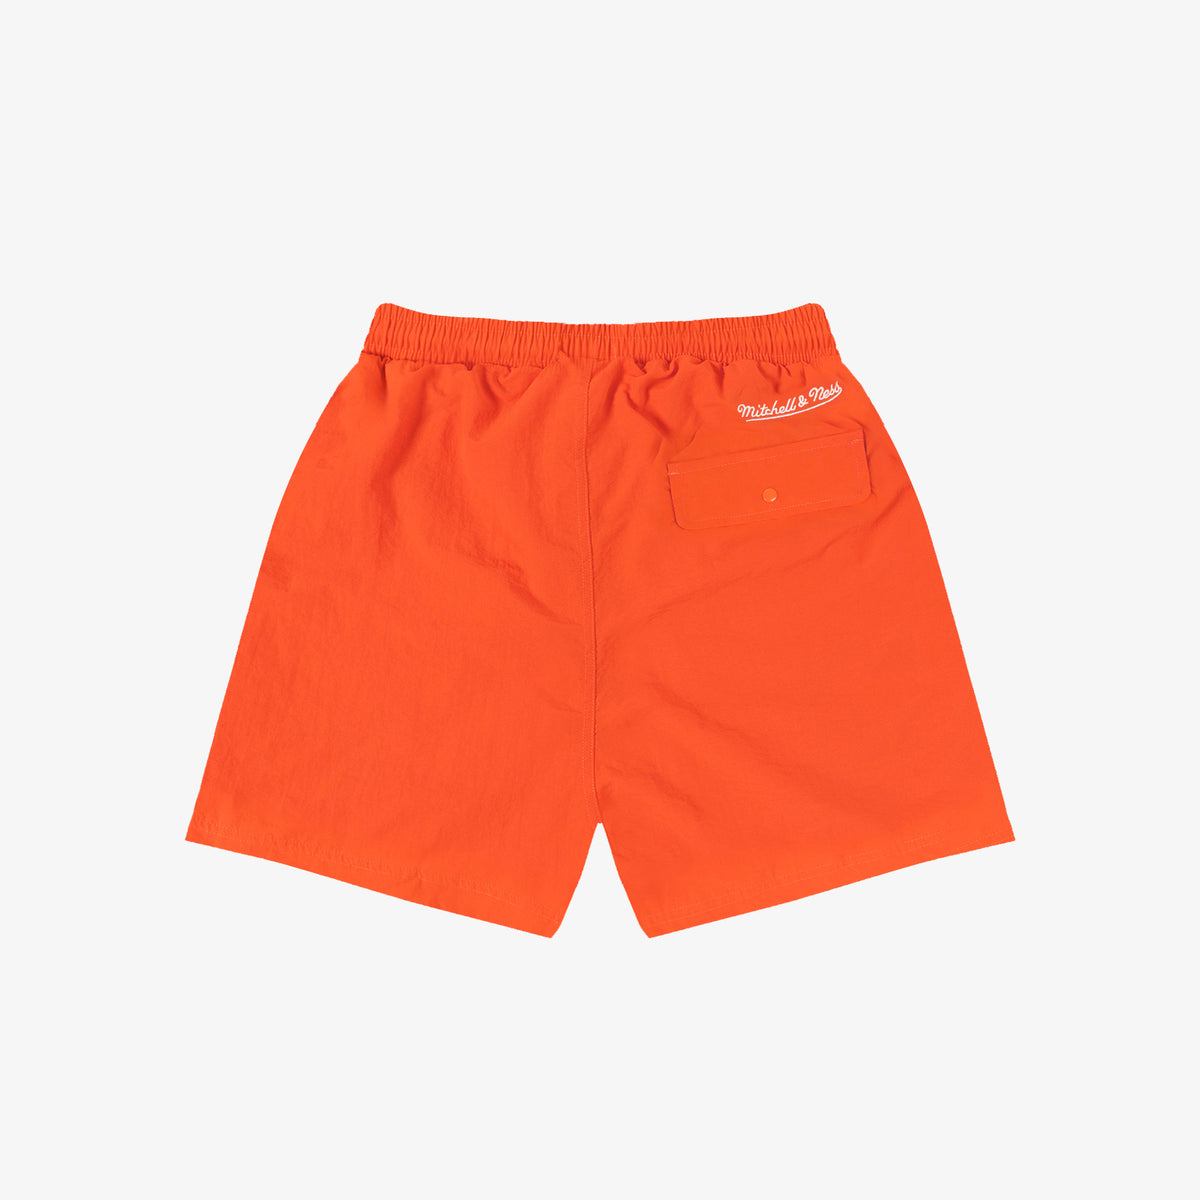 Phoenix Suns Established 1968 Shorts - Orange